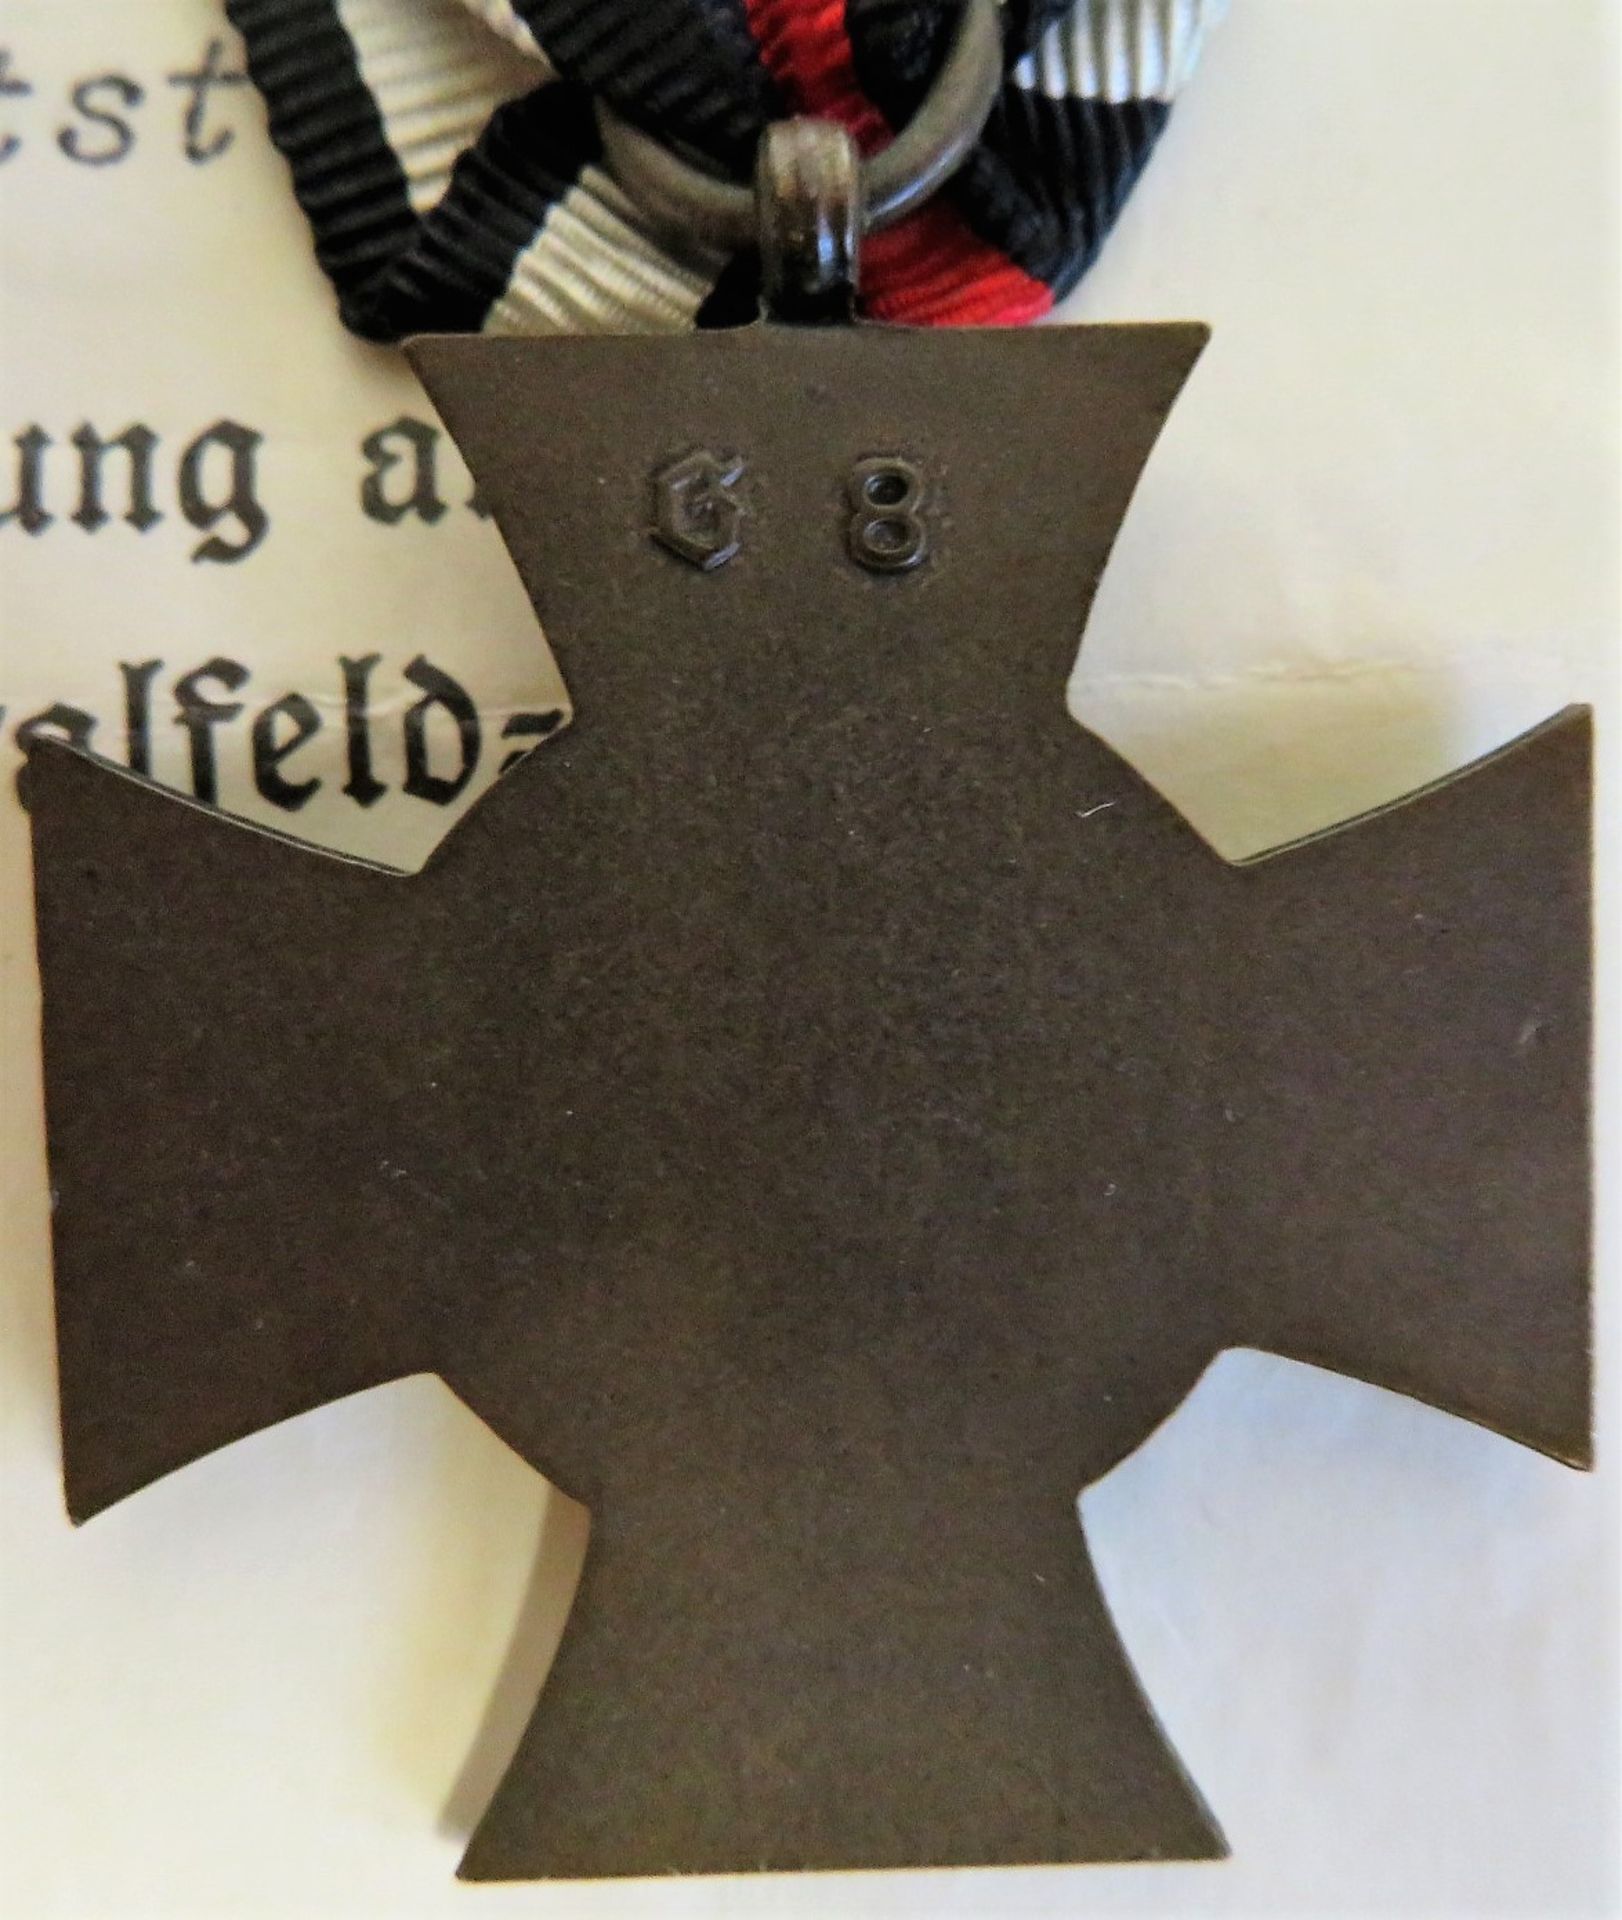 Ehrenkreuz für Kriegsteilnehmer, 1914 - 1918, mit Verleihungsurkunde, 1934. - Bild 3 aus 3